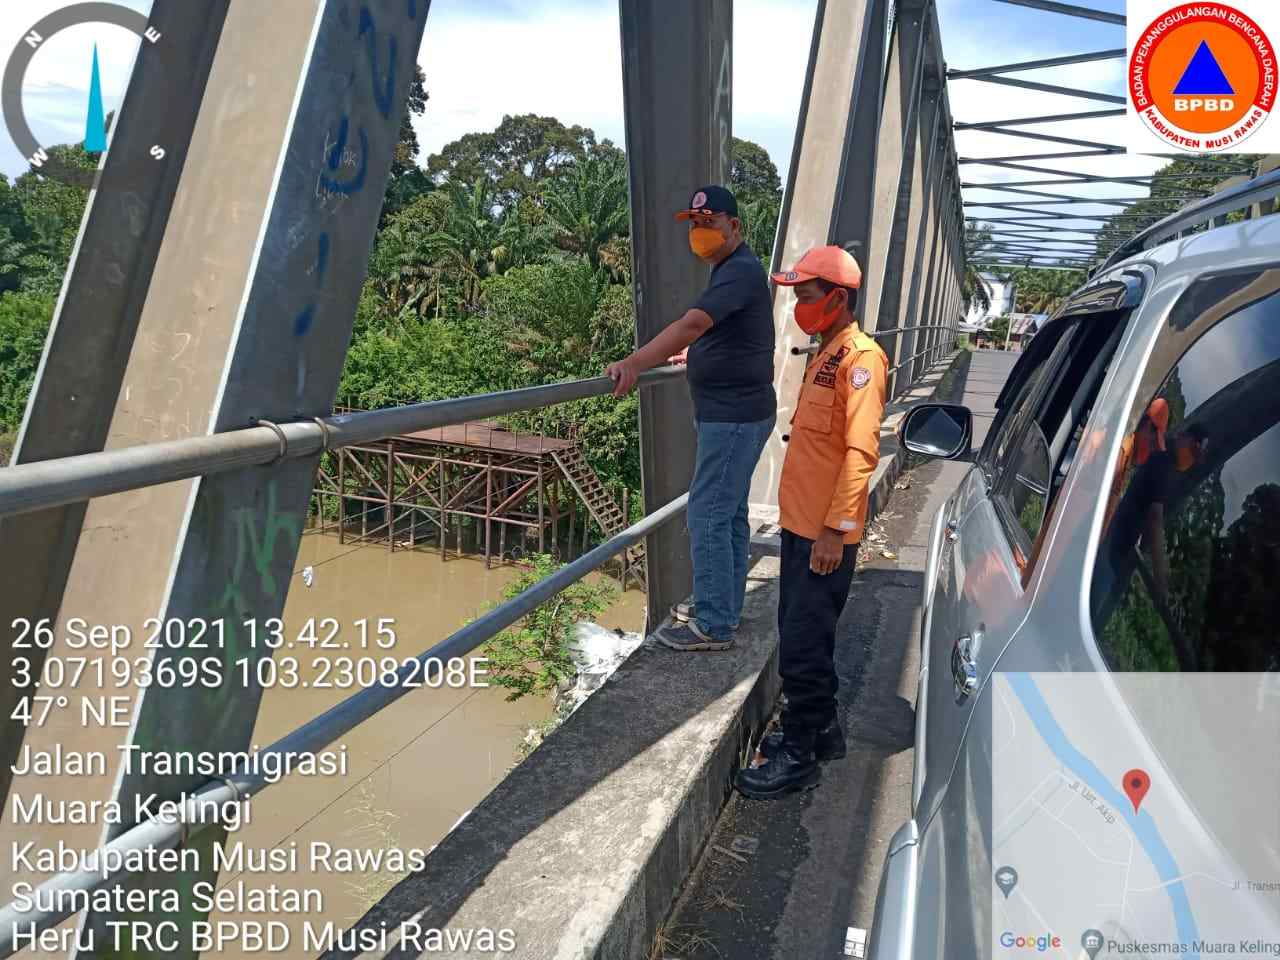 BPBD Musi Rawas Pantau Debit Air, Antisipasi Banjir